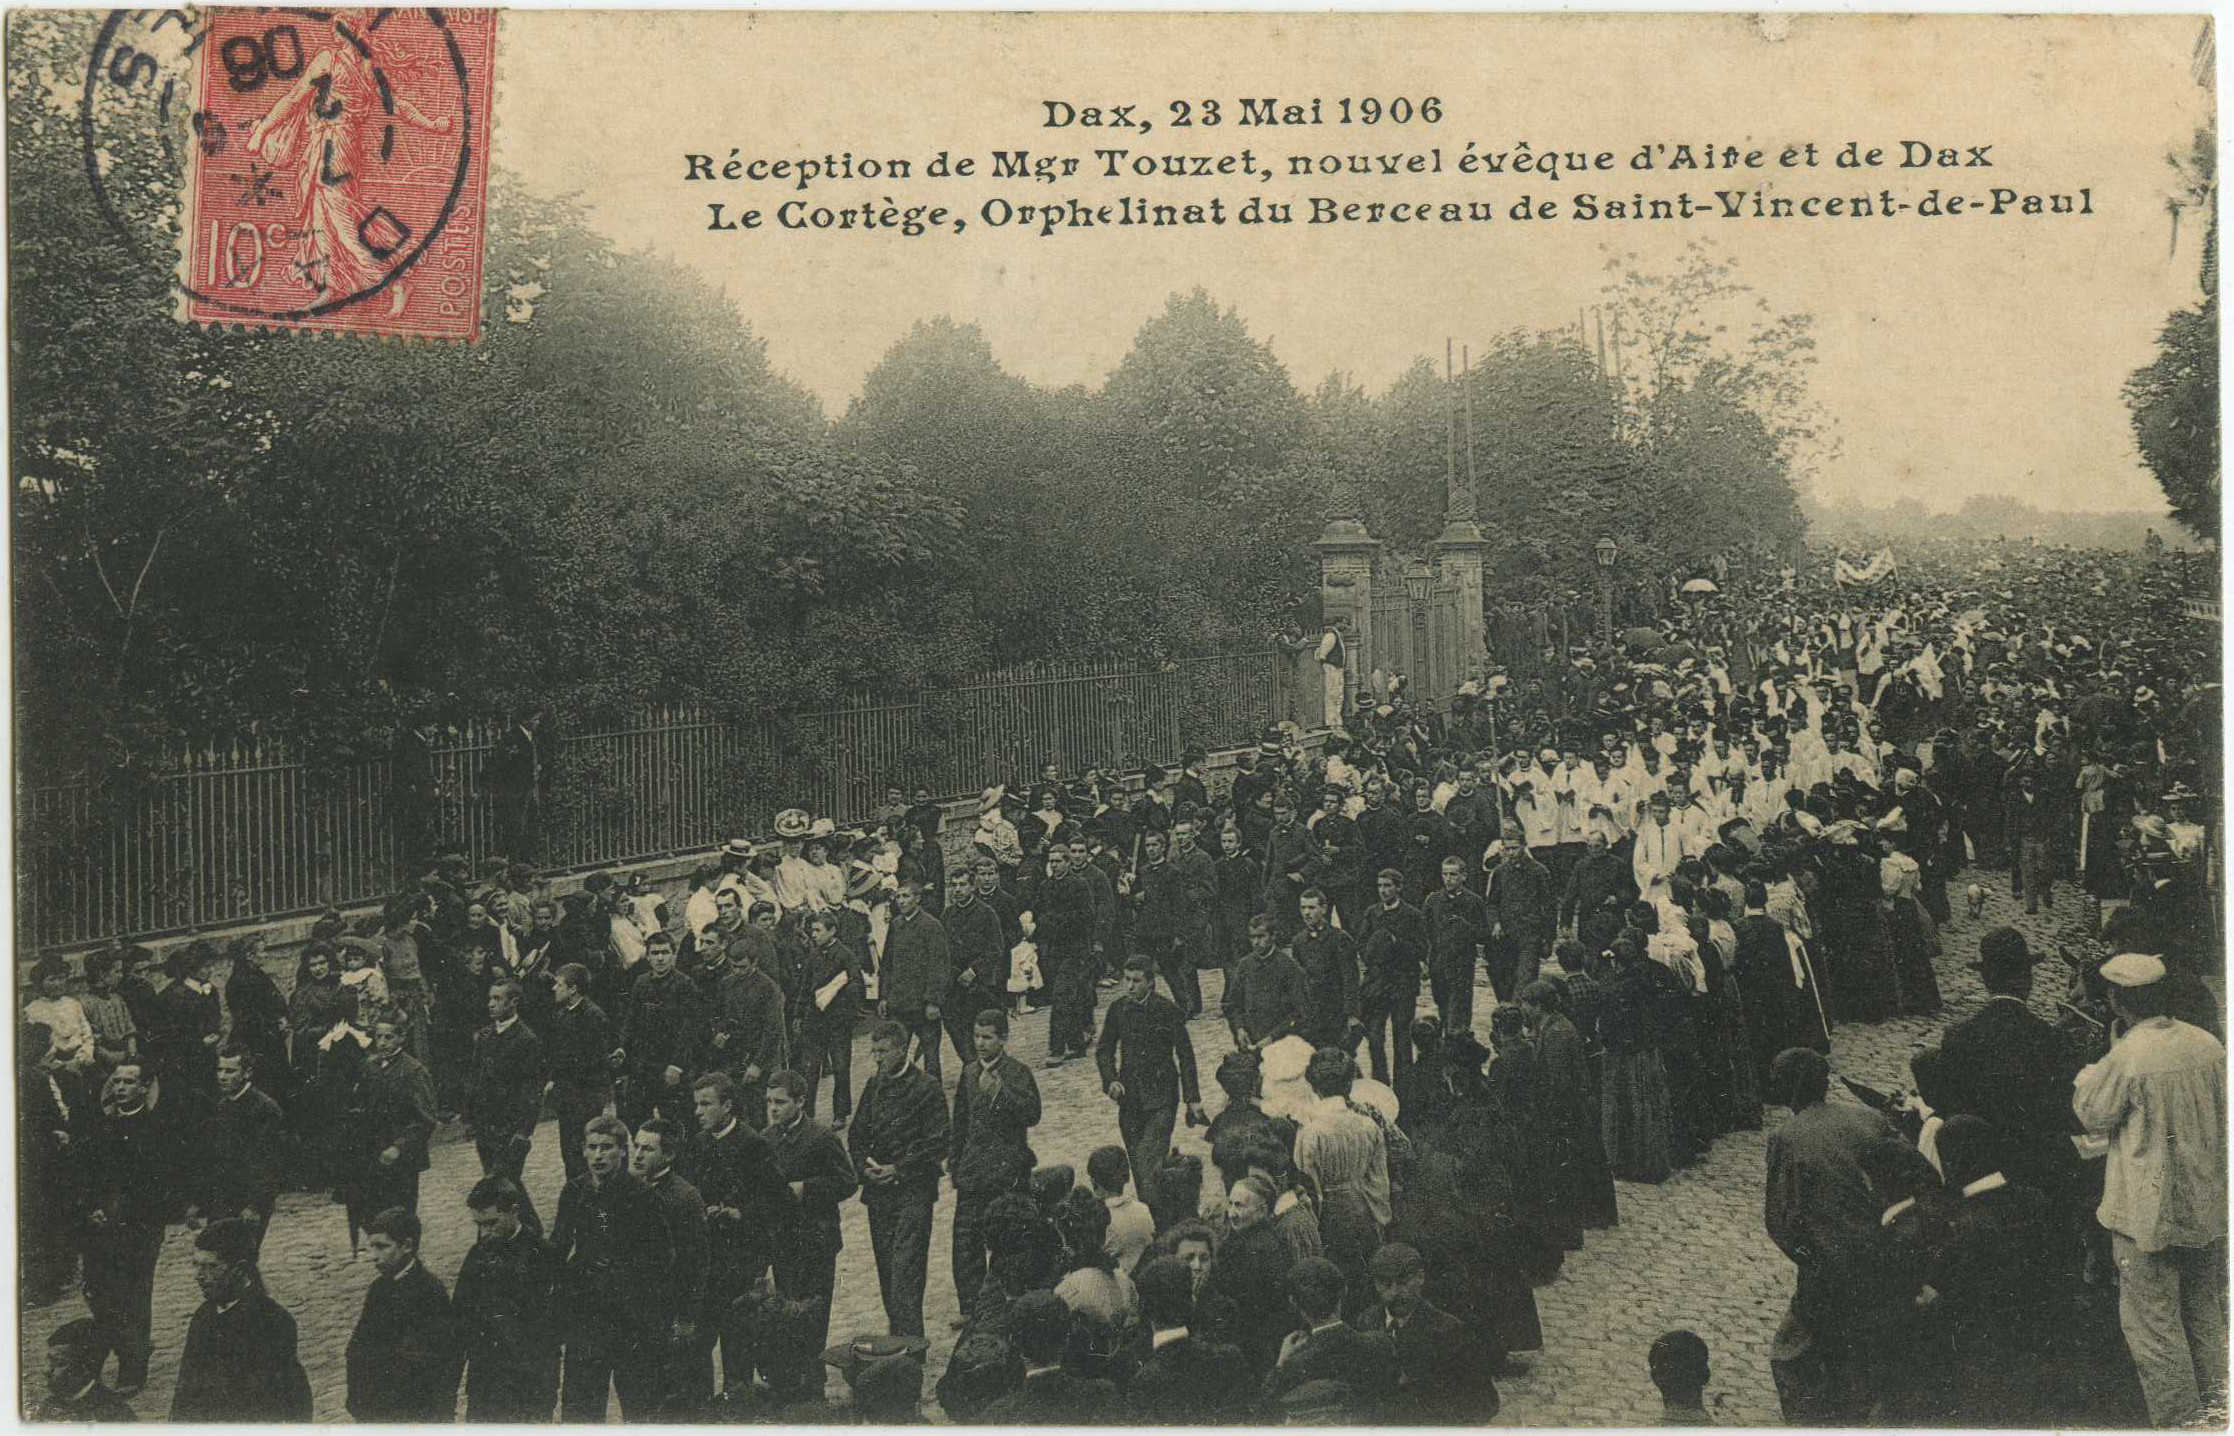 Dax - Dax, 23 Mai 1906 - Réception de Mgr Touzet, nouvel évêque d'Aire et de Dax - Le Cortège, Orphelinat du Berceau de Saint-Vincent-de-Paul